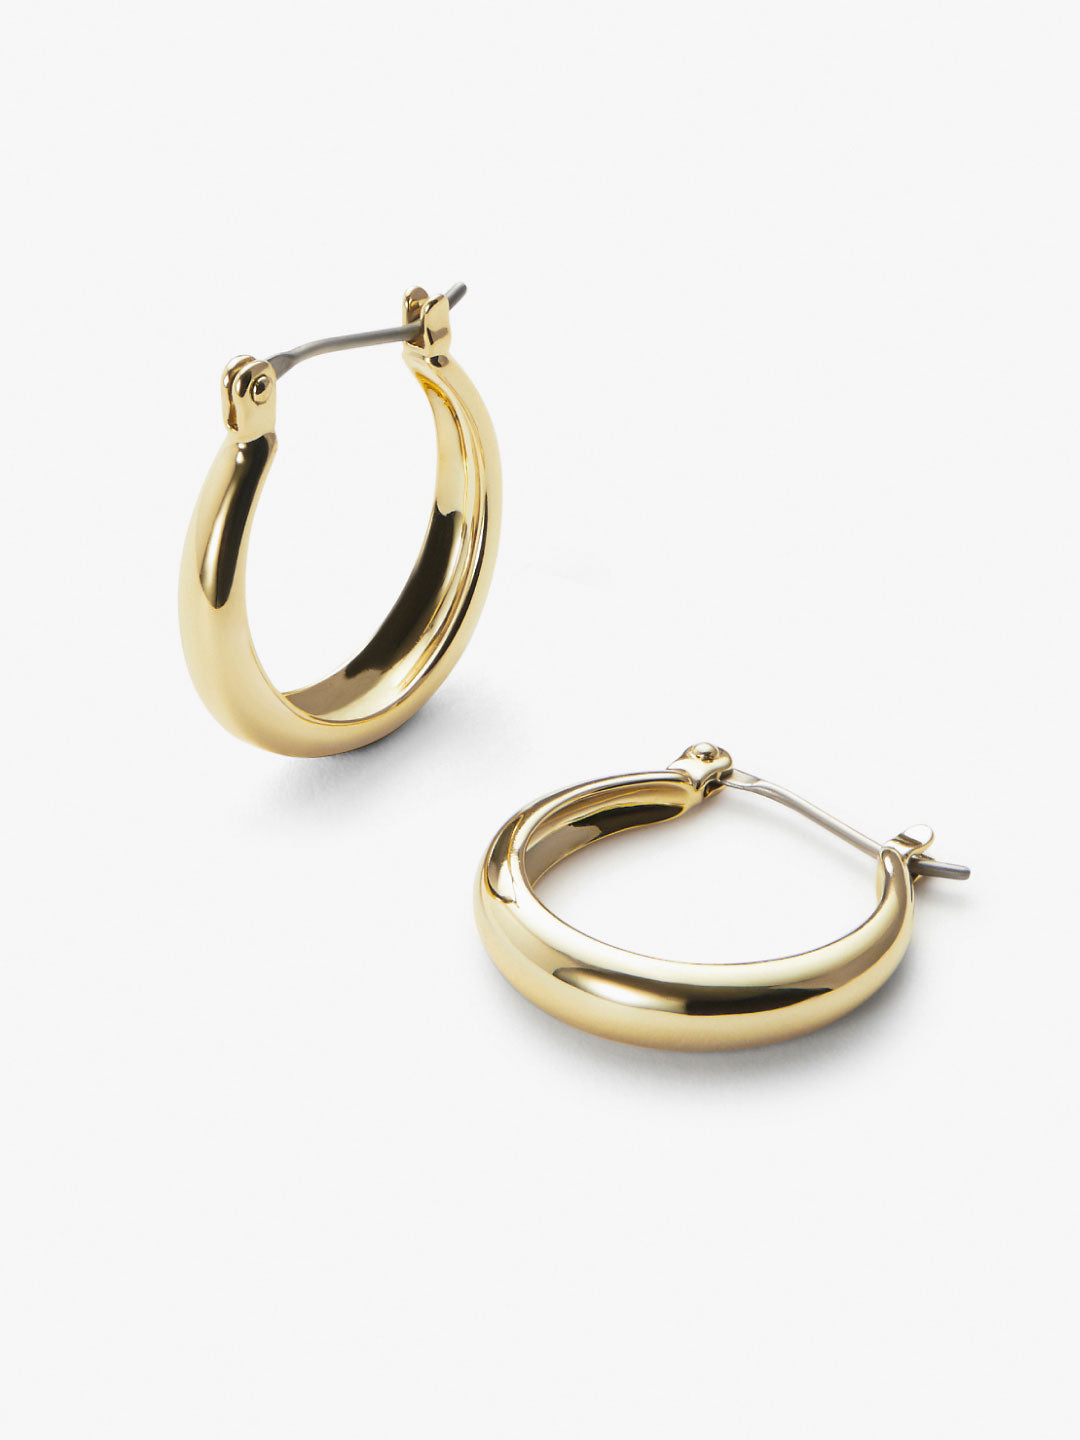 Ana Luisa Jewelry Earrings Hoop Earrings Endless Hoop Earrings Venus Gold